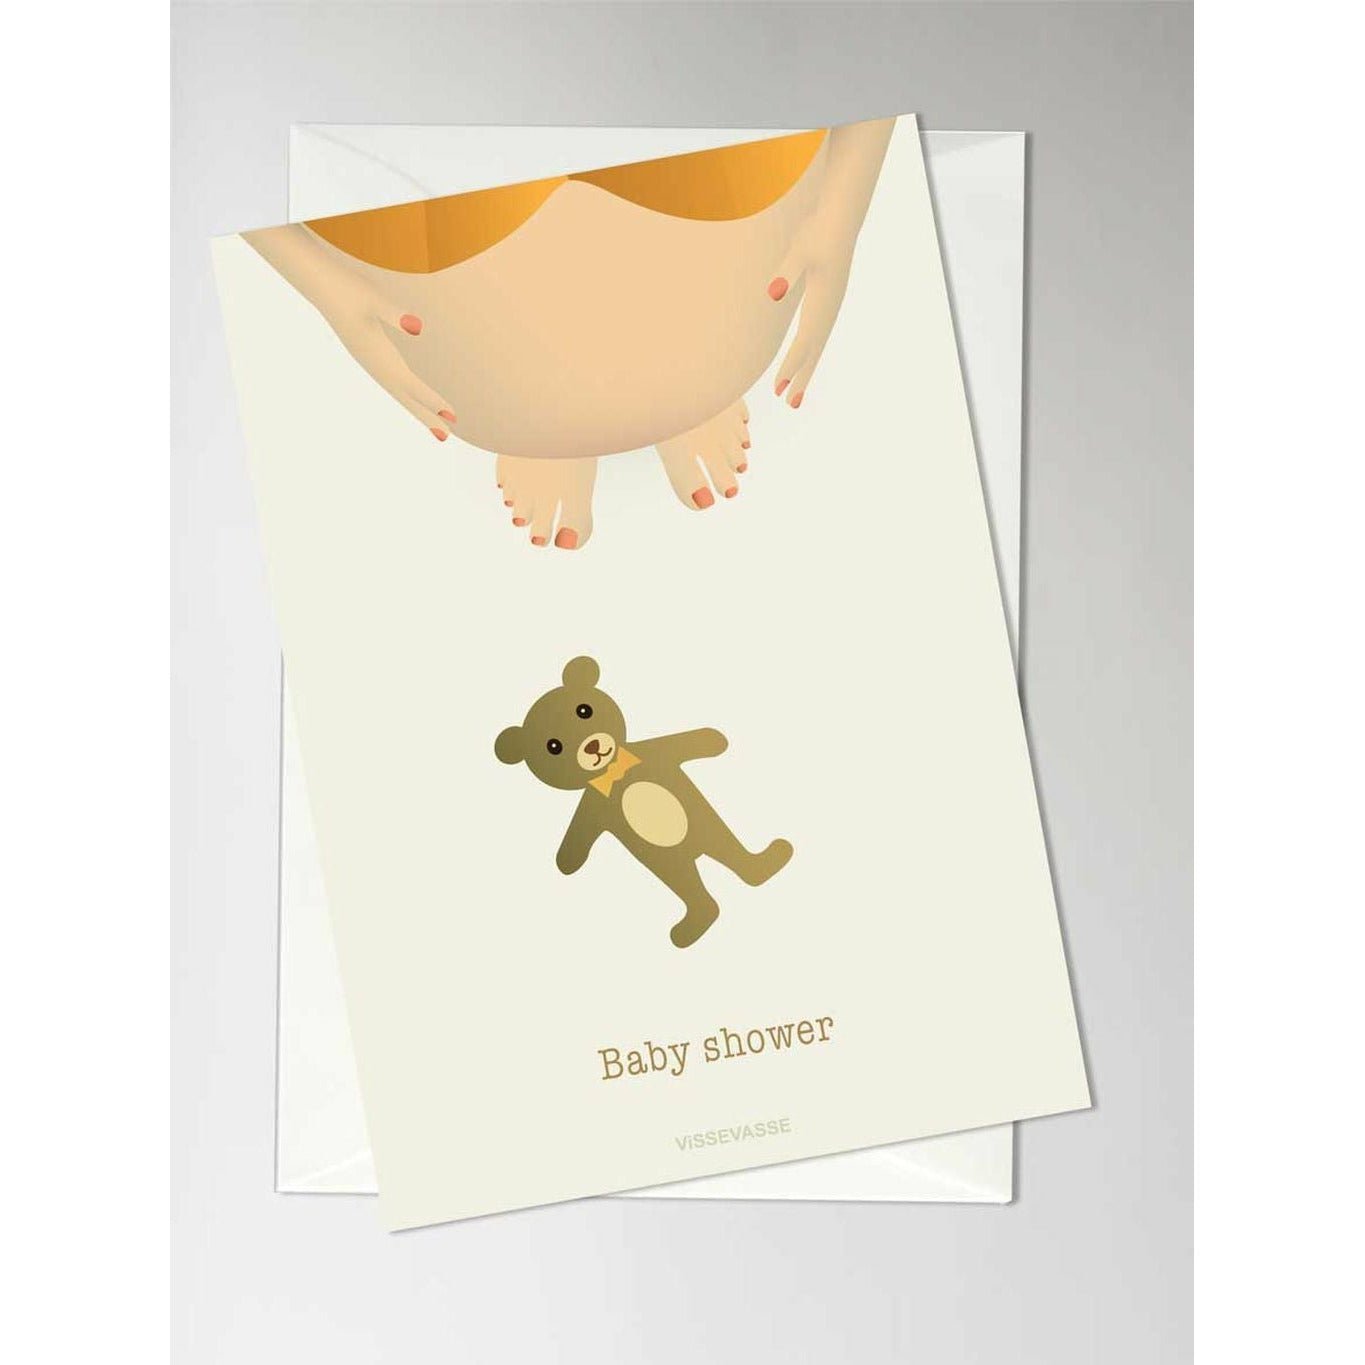 Vissevasse Baby Shower Anledningskort